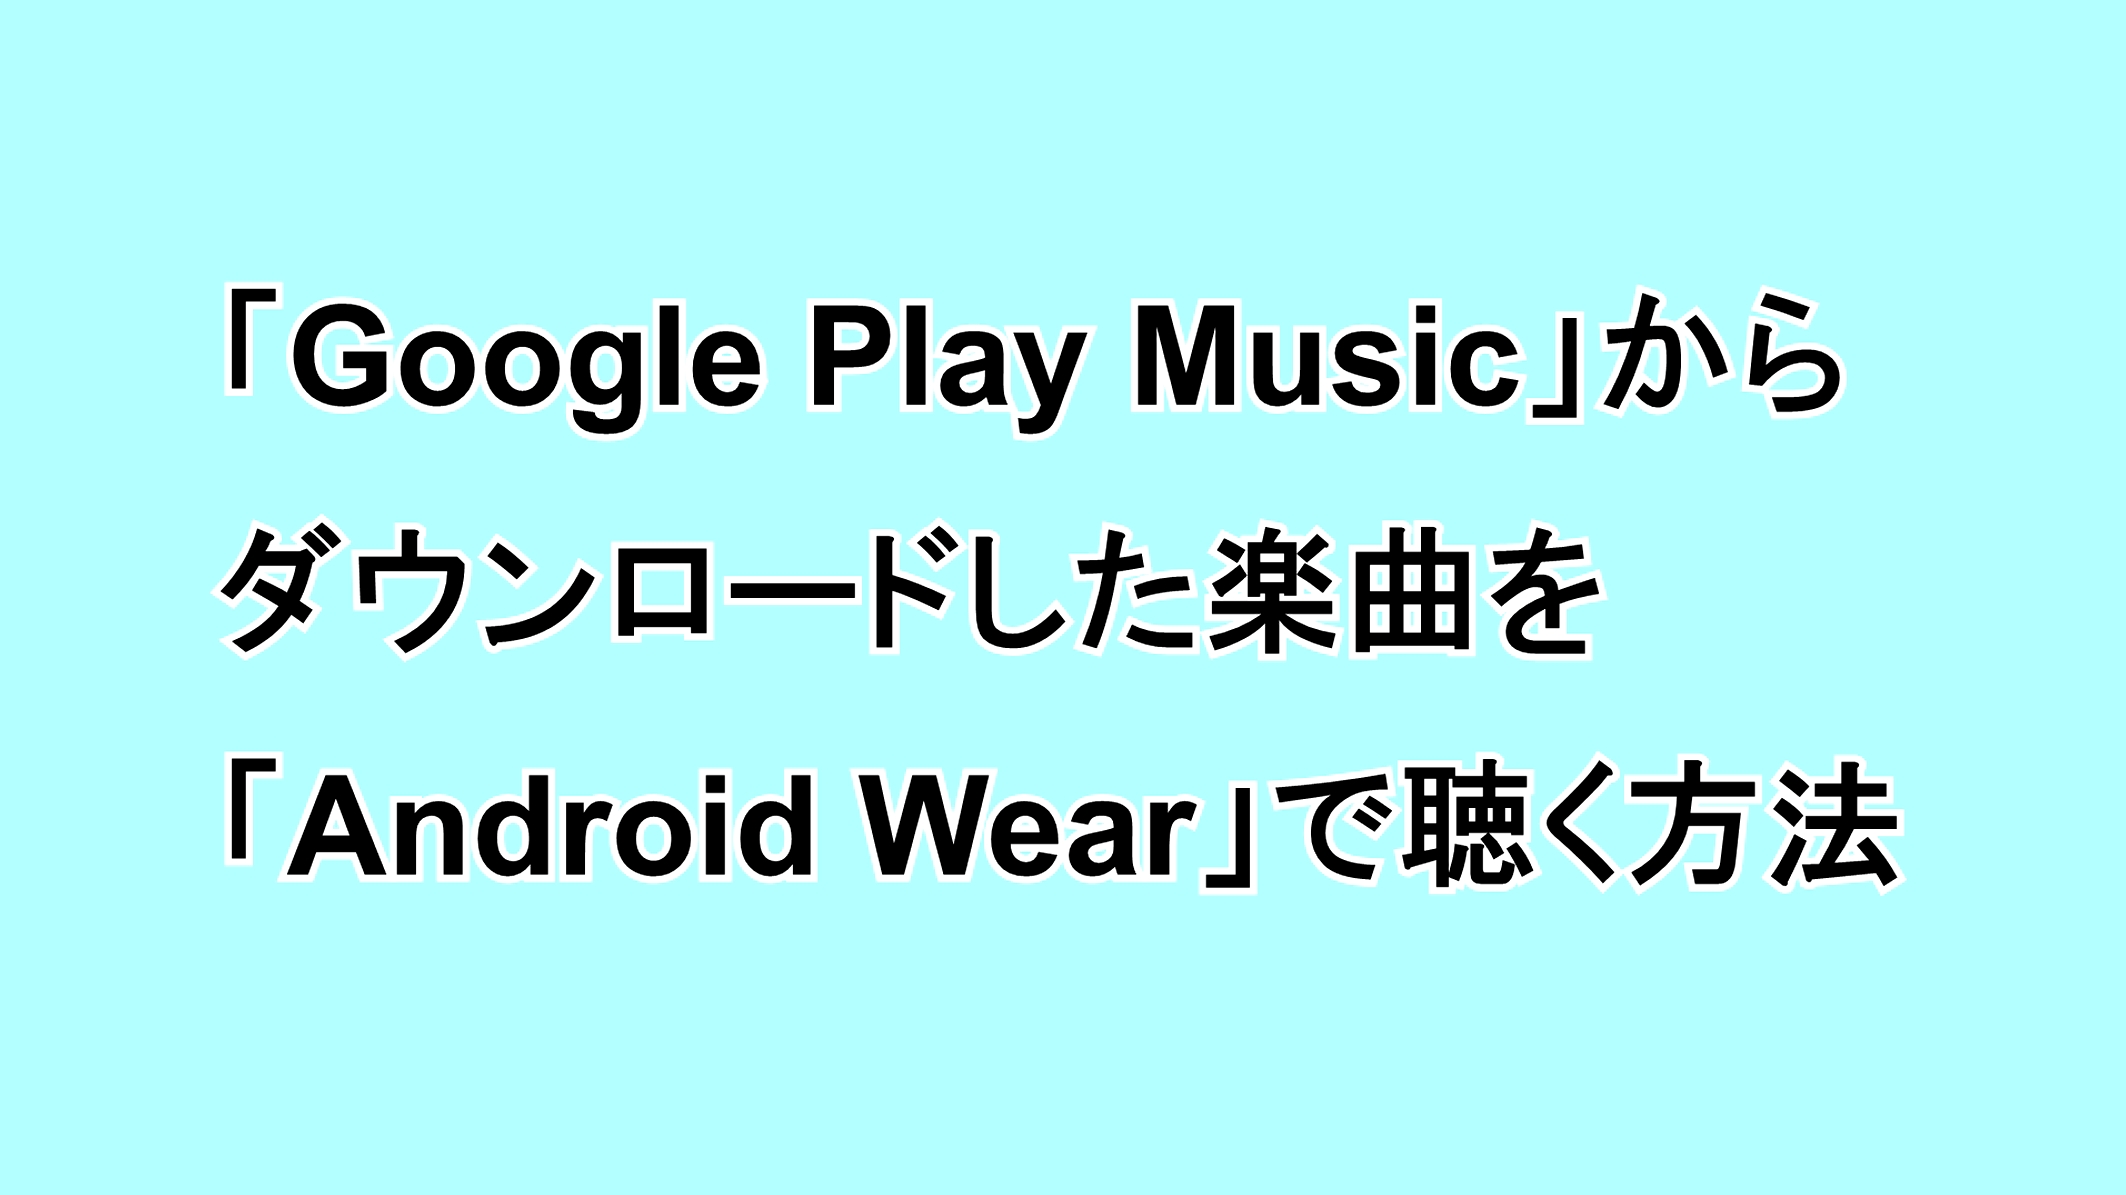 「Google Play Music」からダウンロードした楽曲を「Android Wear」で聴く方法